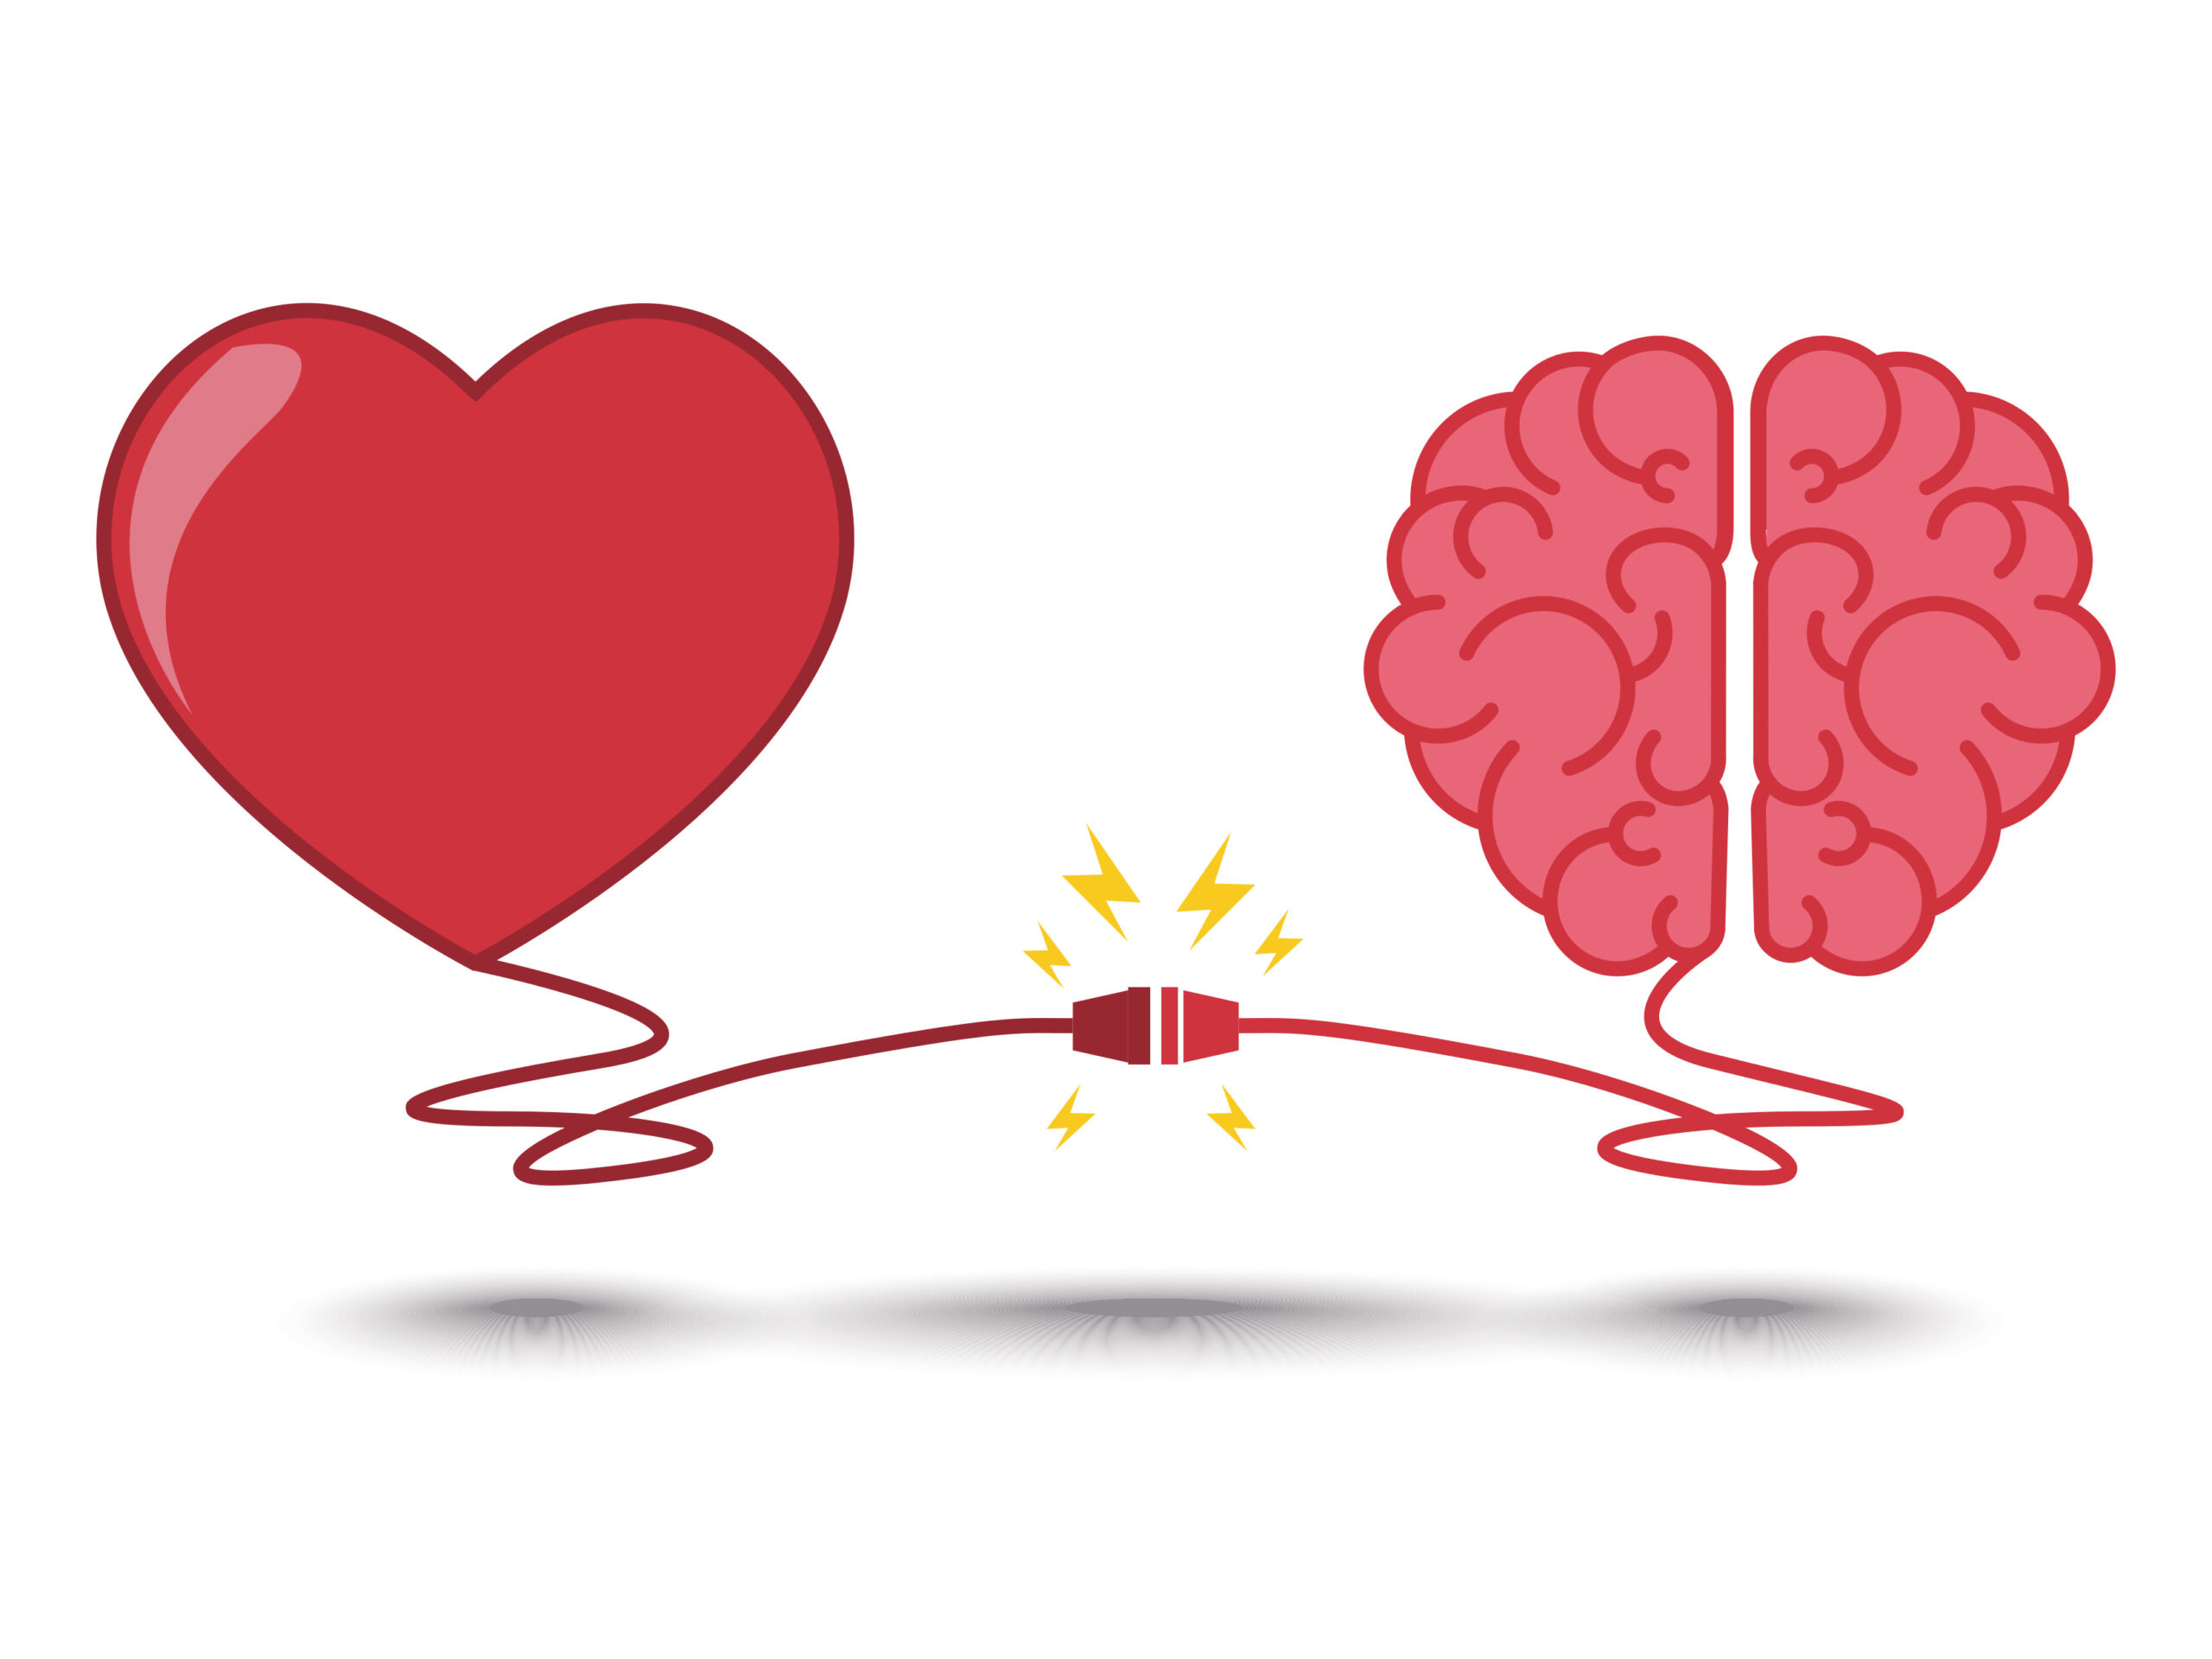 Coeur et cerveau reliés par un cable électrique